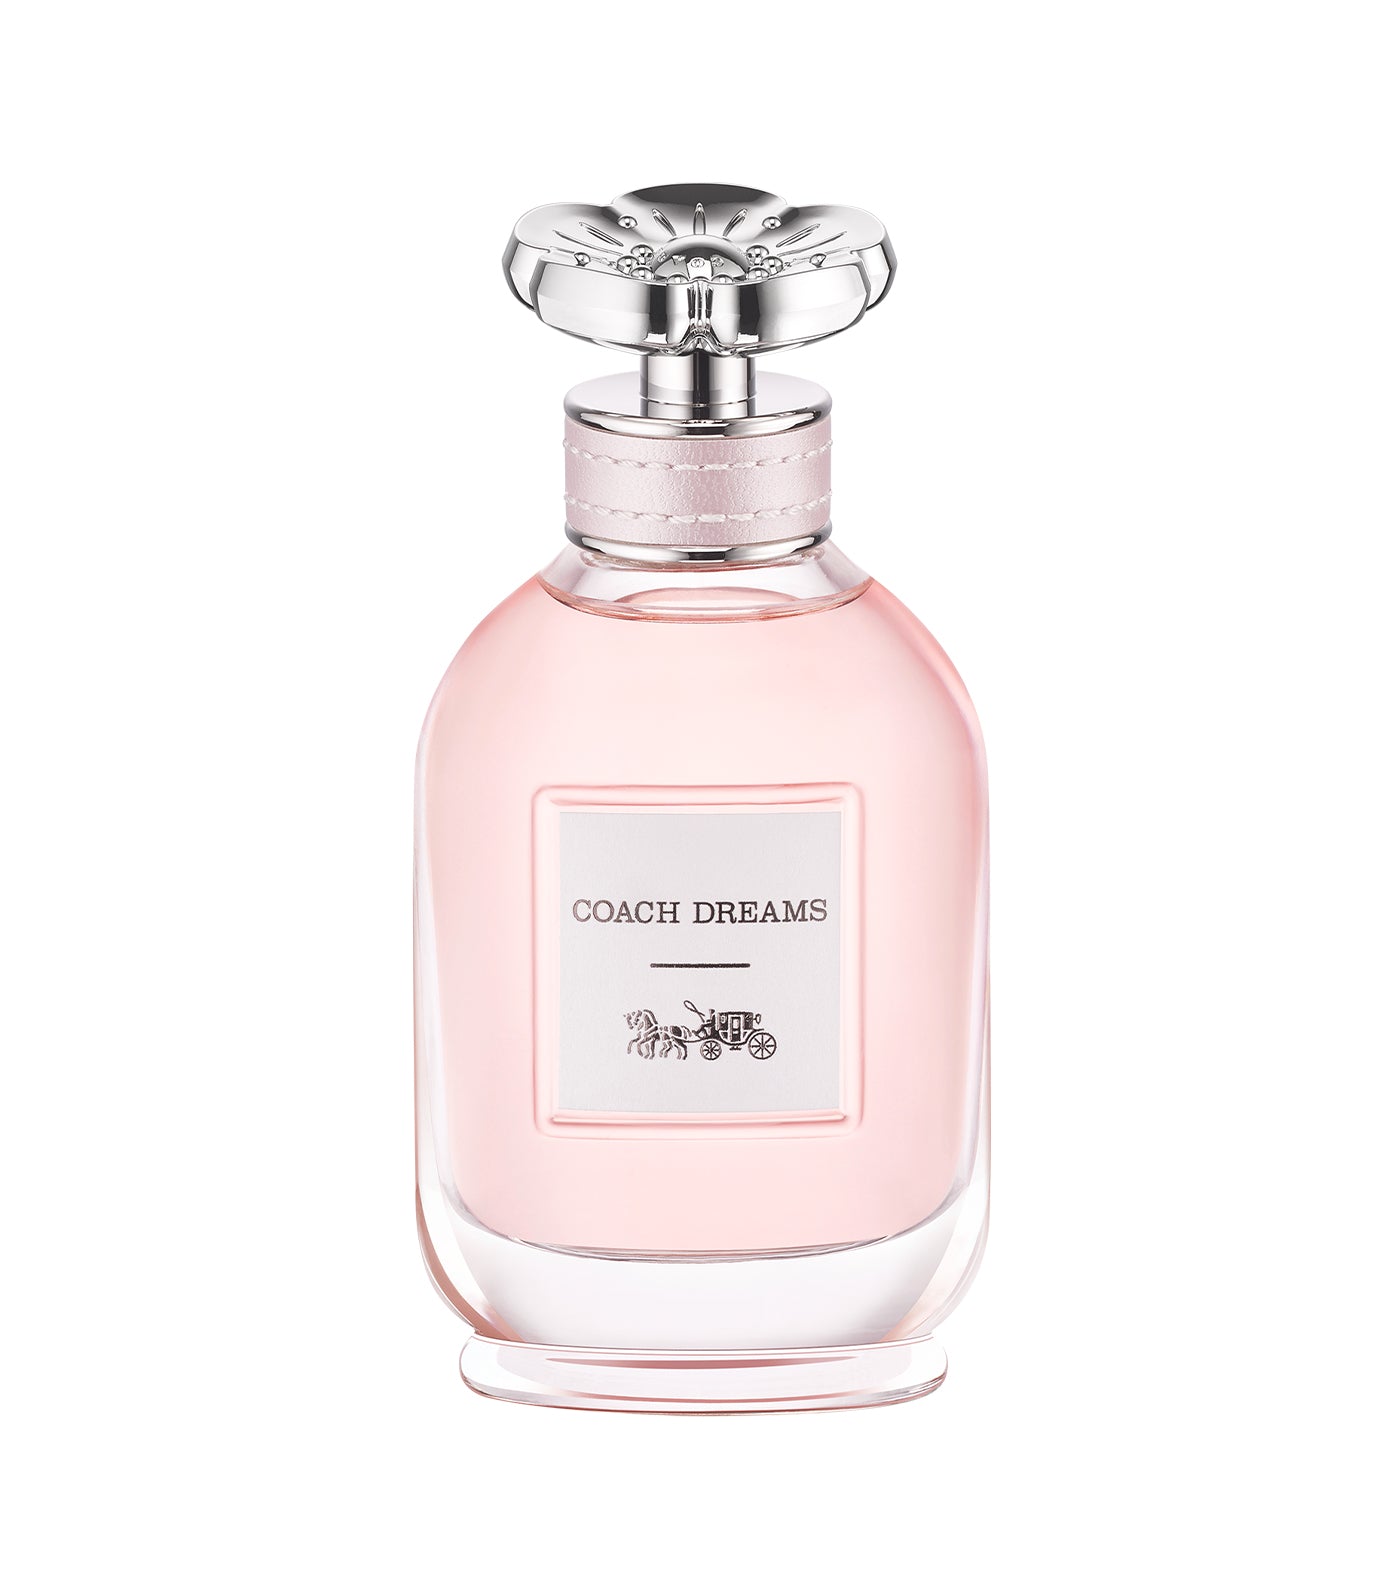 Dreams Eau de Parfum by Coach Fragrances 60ml